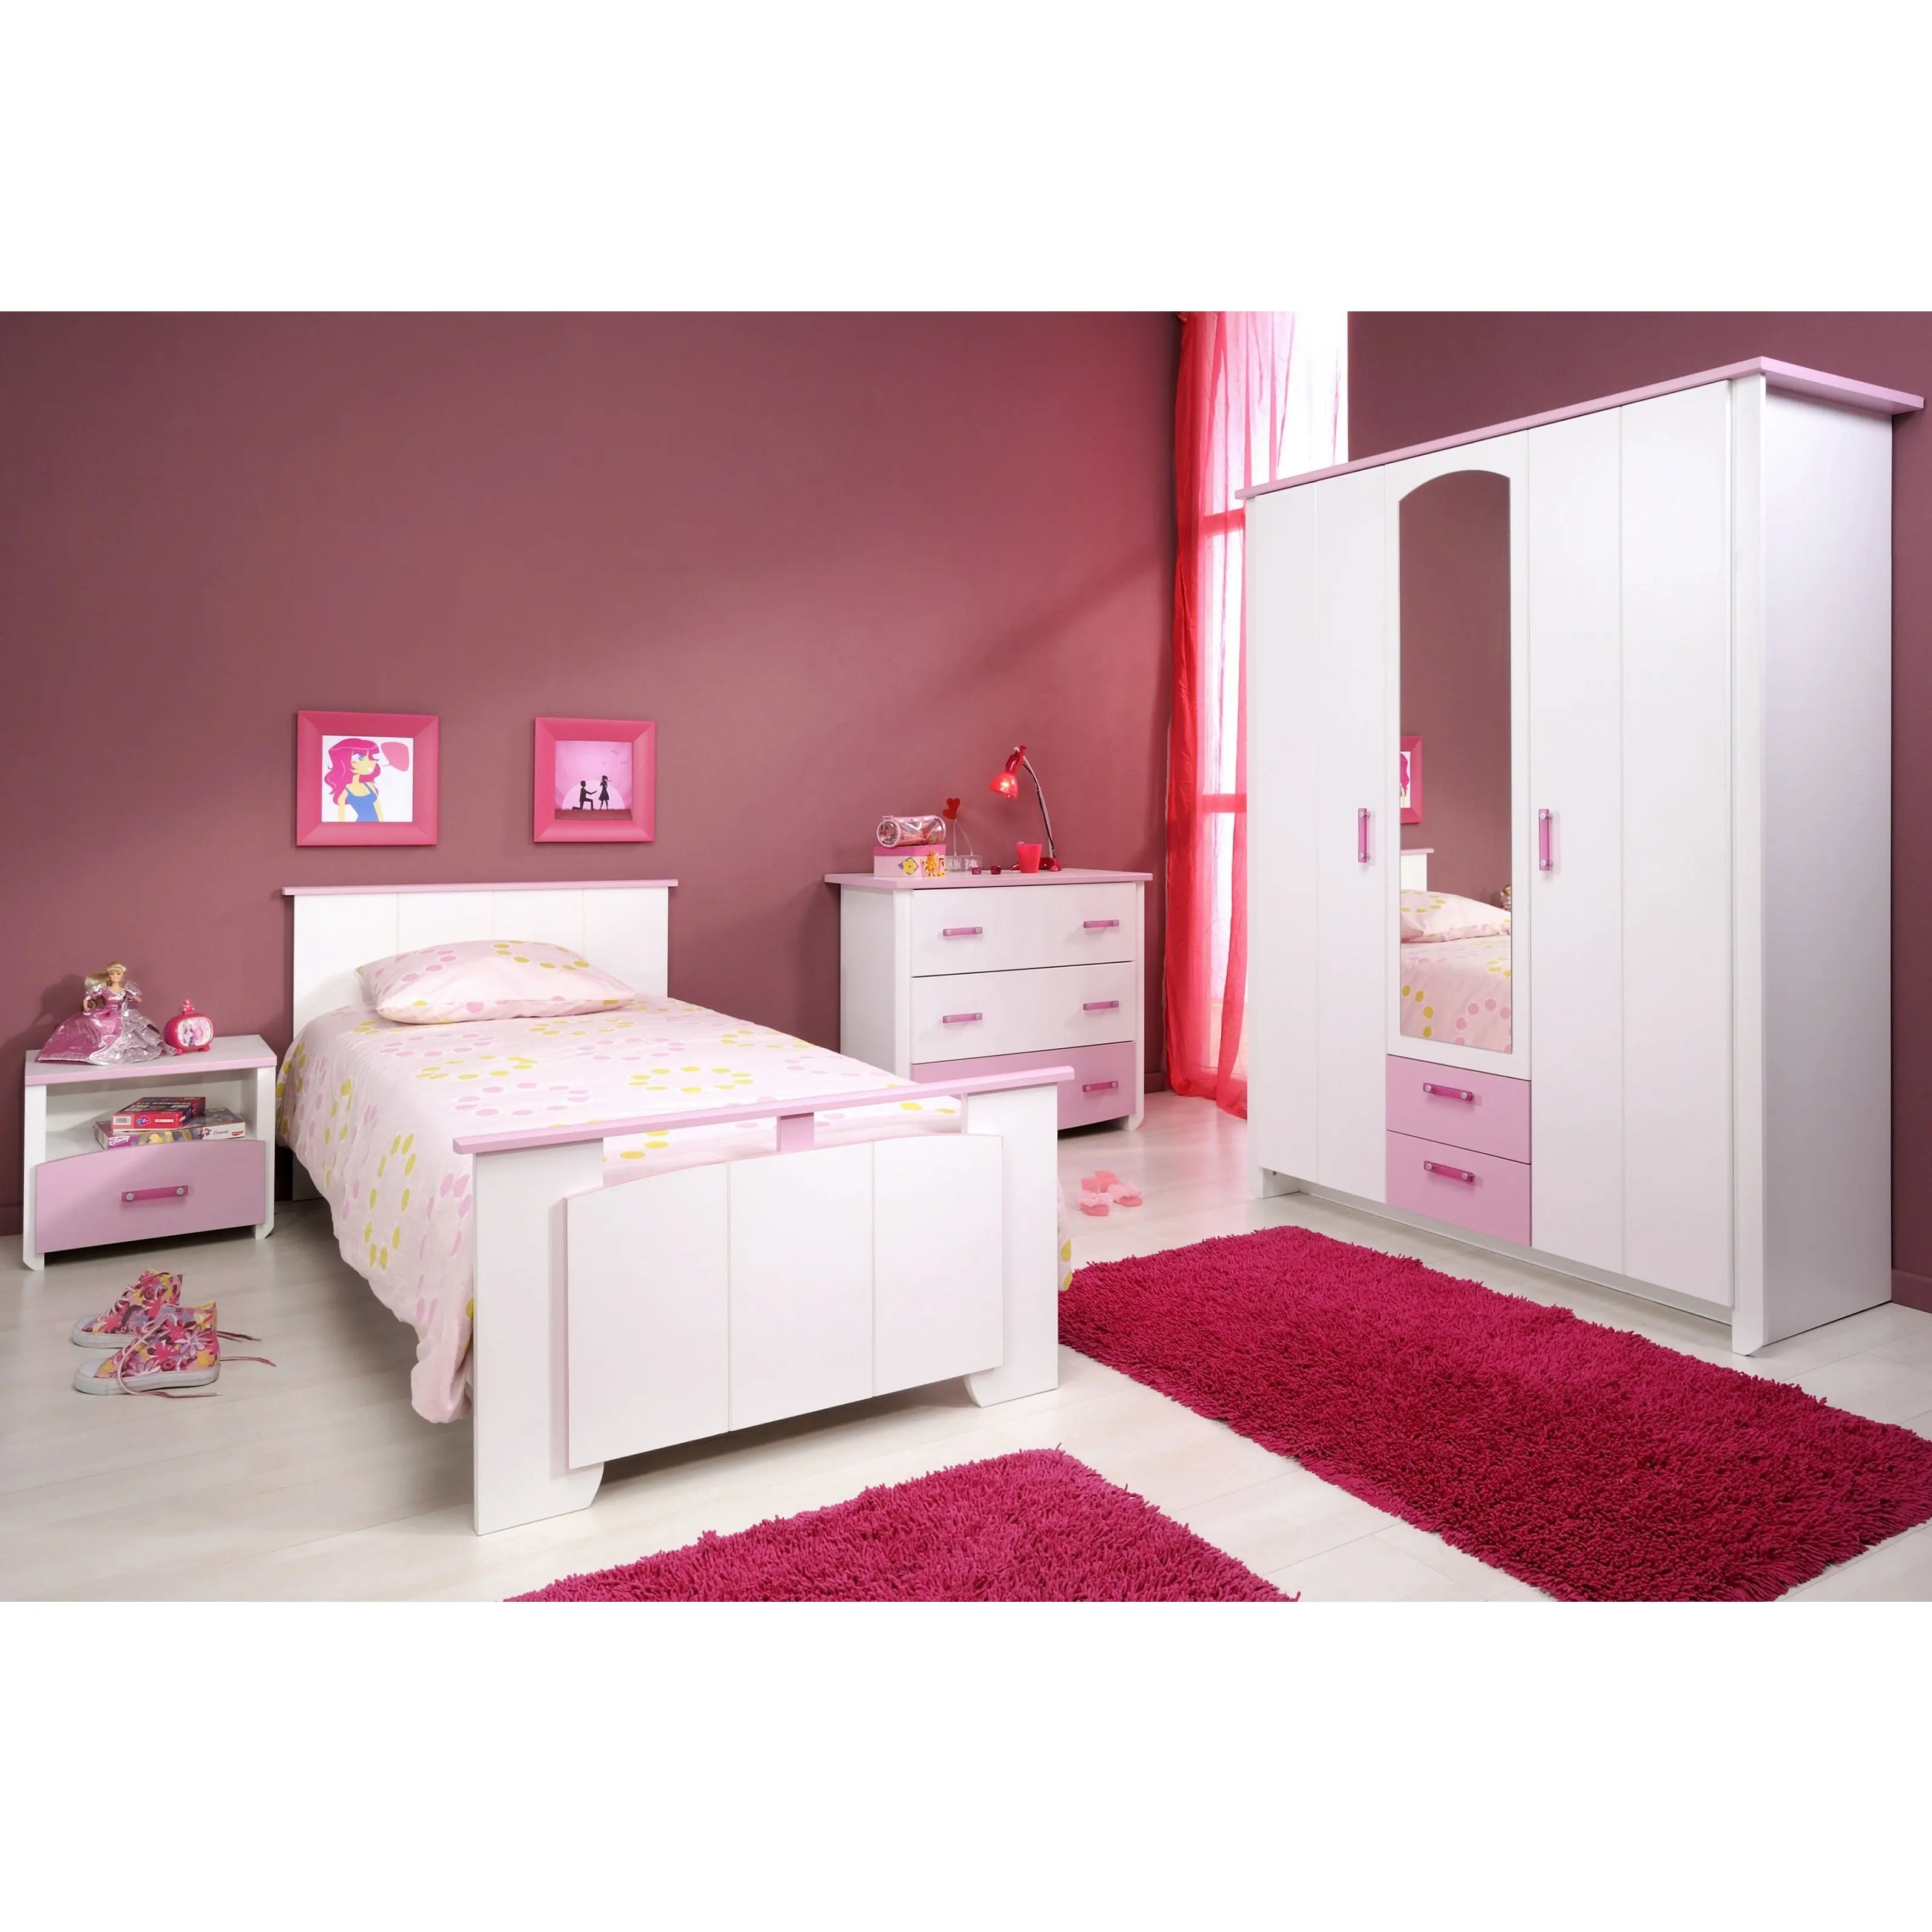 NOVA 20KAD041 Princess Girls Bedroom Set Modern Kids Pink Wooden Bed Children Size Single Bed Pink Kids Room For Girl